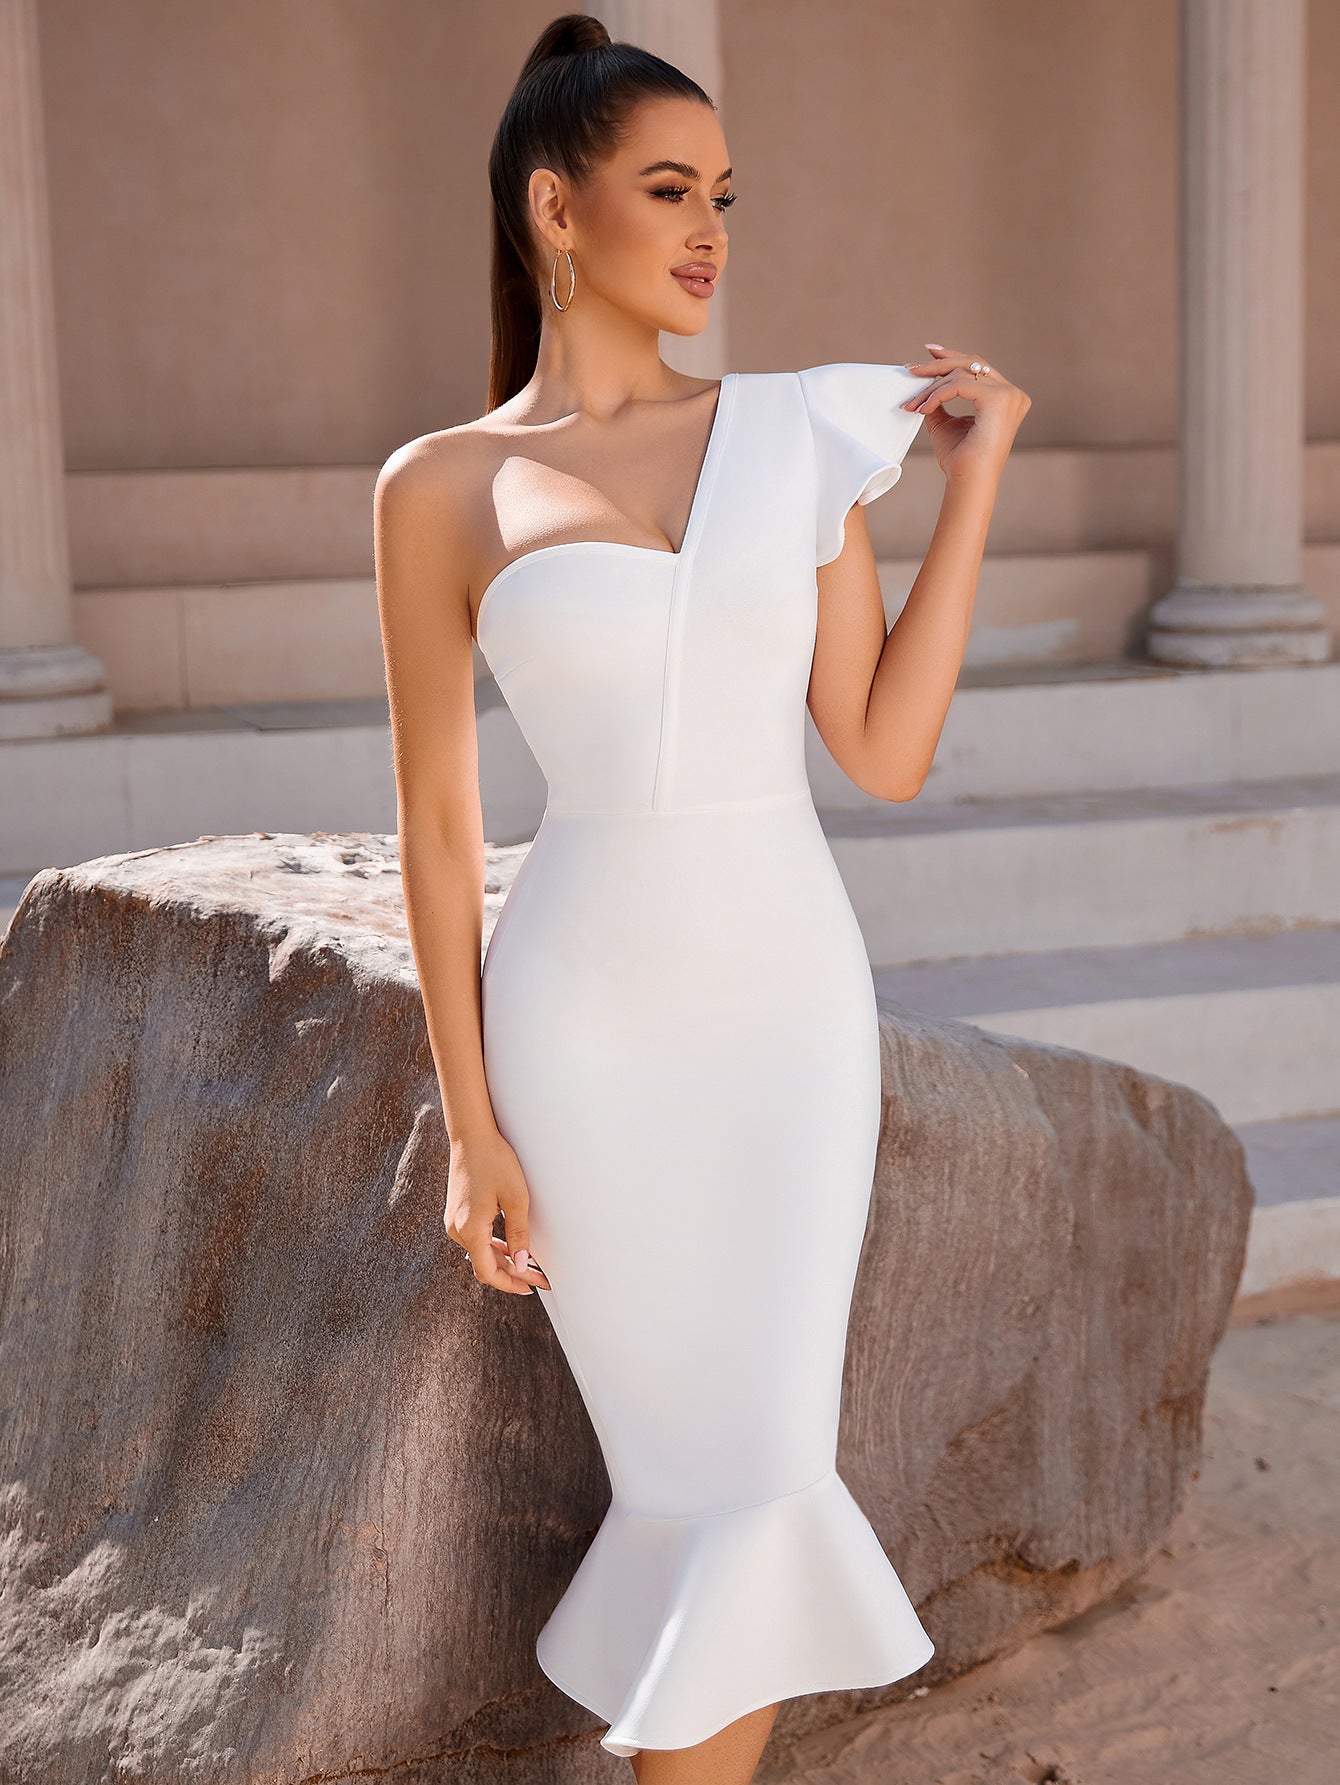 White Dress Aesthetic | One Shoulder Ruffles White Mermaid Dress